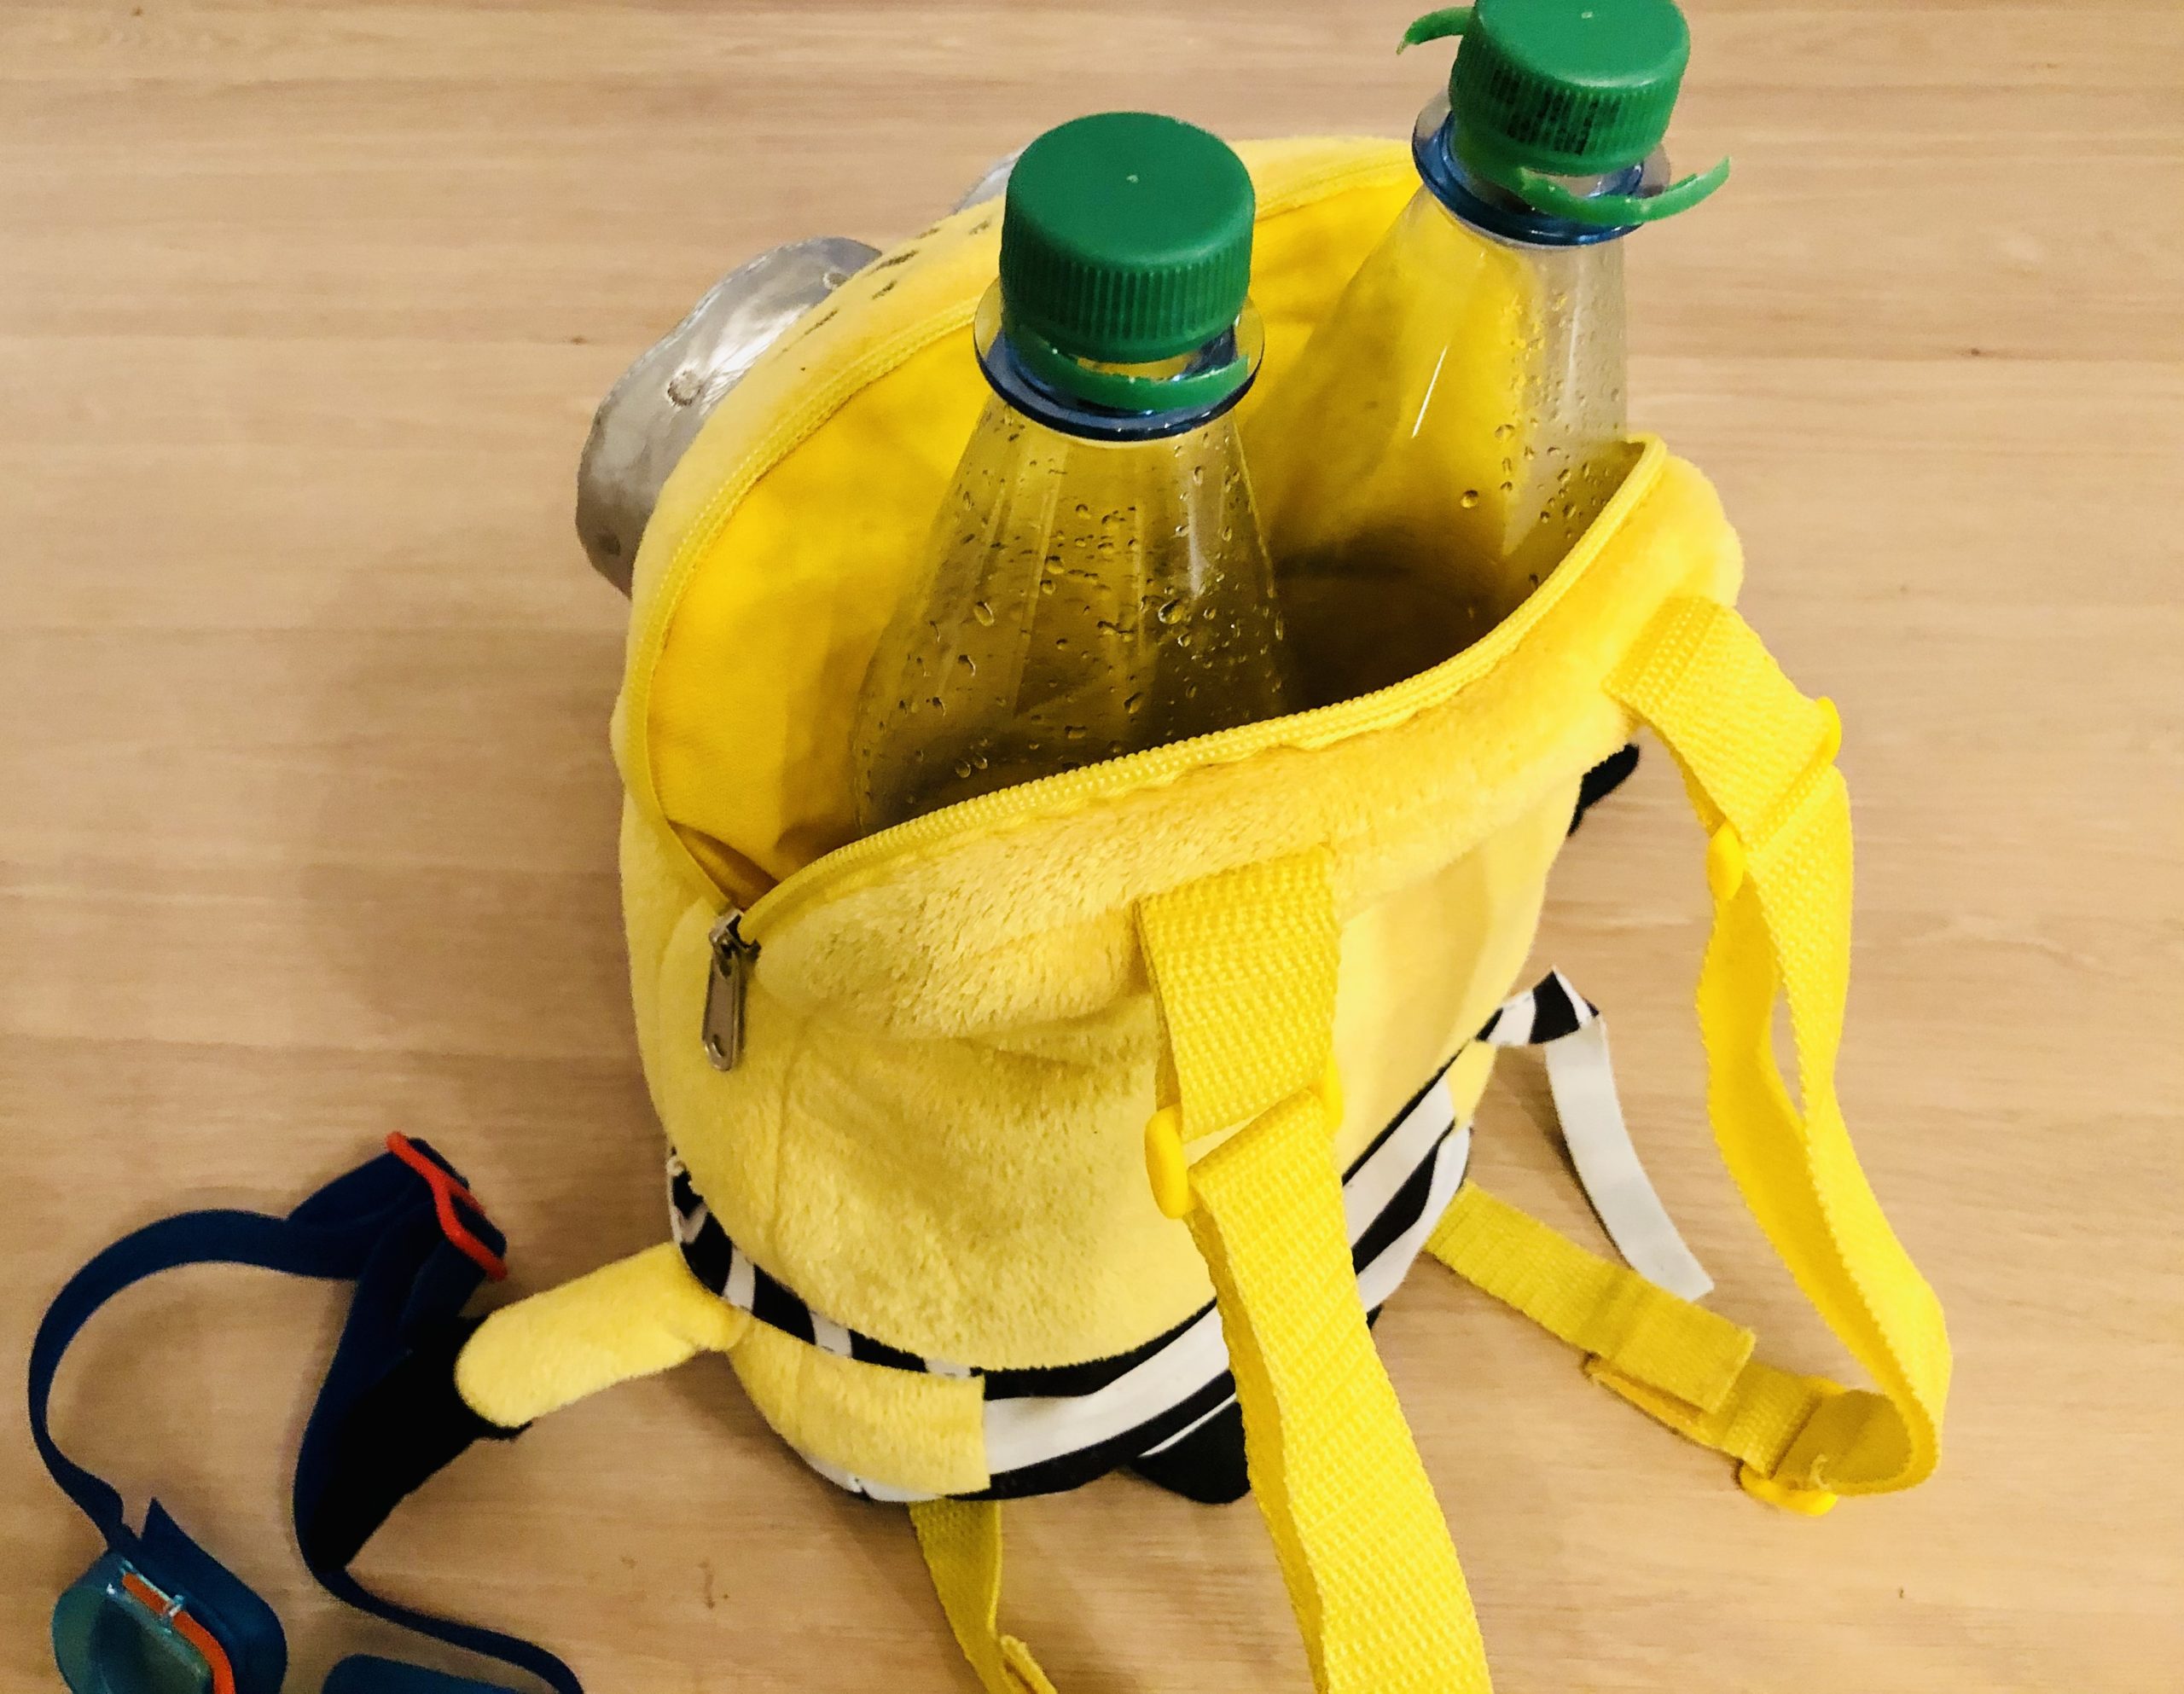 Bild zum Schritt 2 für die Kinder-Beschäftigung: 'Dann stellt ihr die leeren Flaschen in den Rucksack. Lasst...'